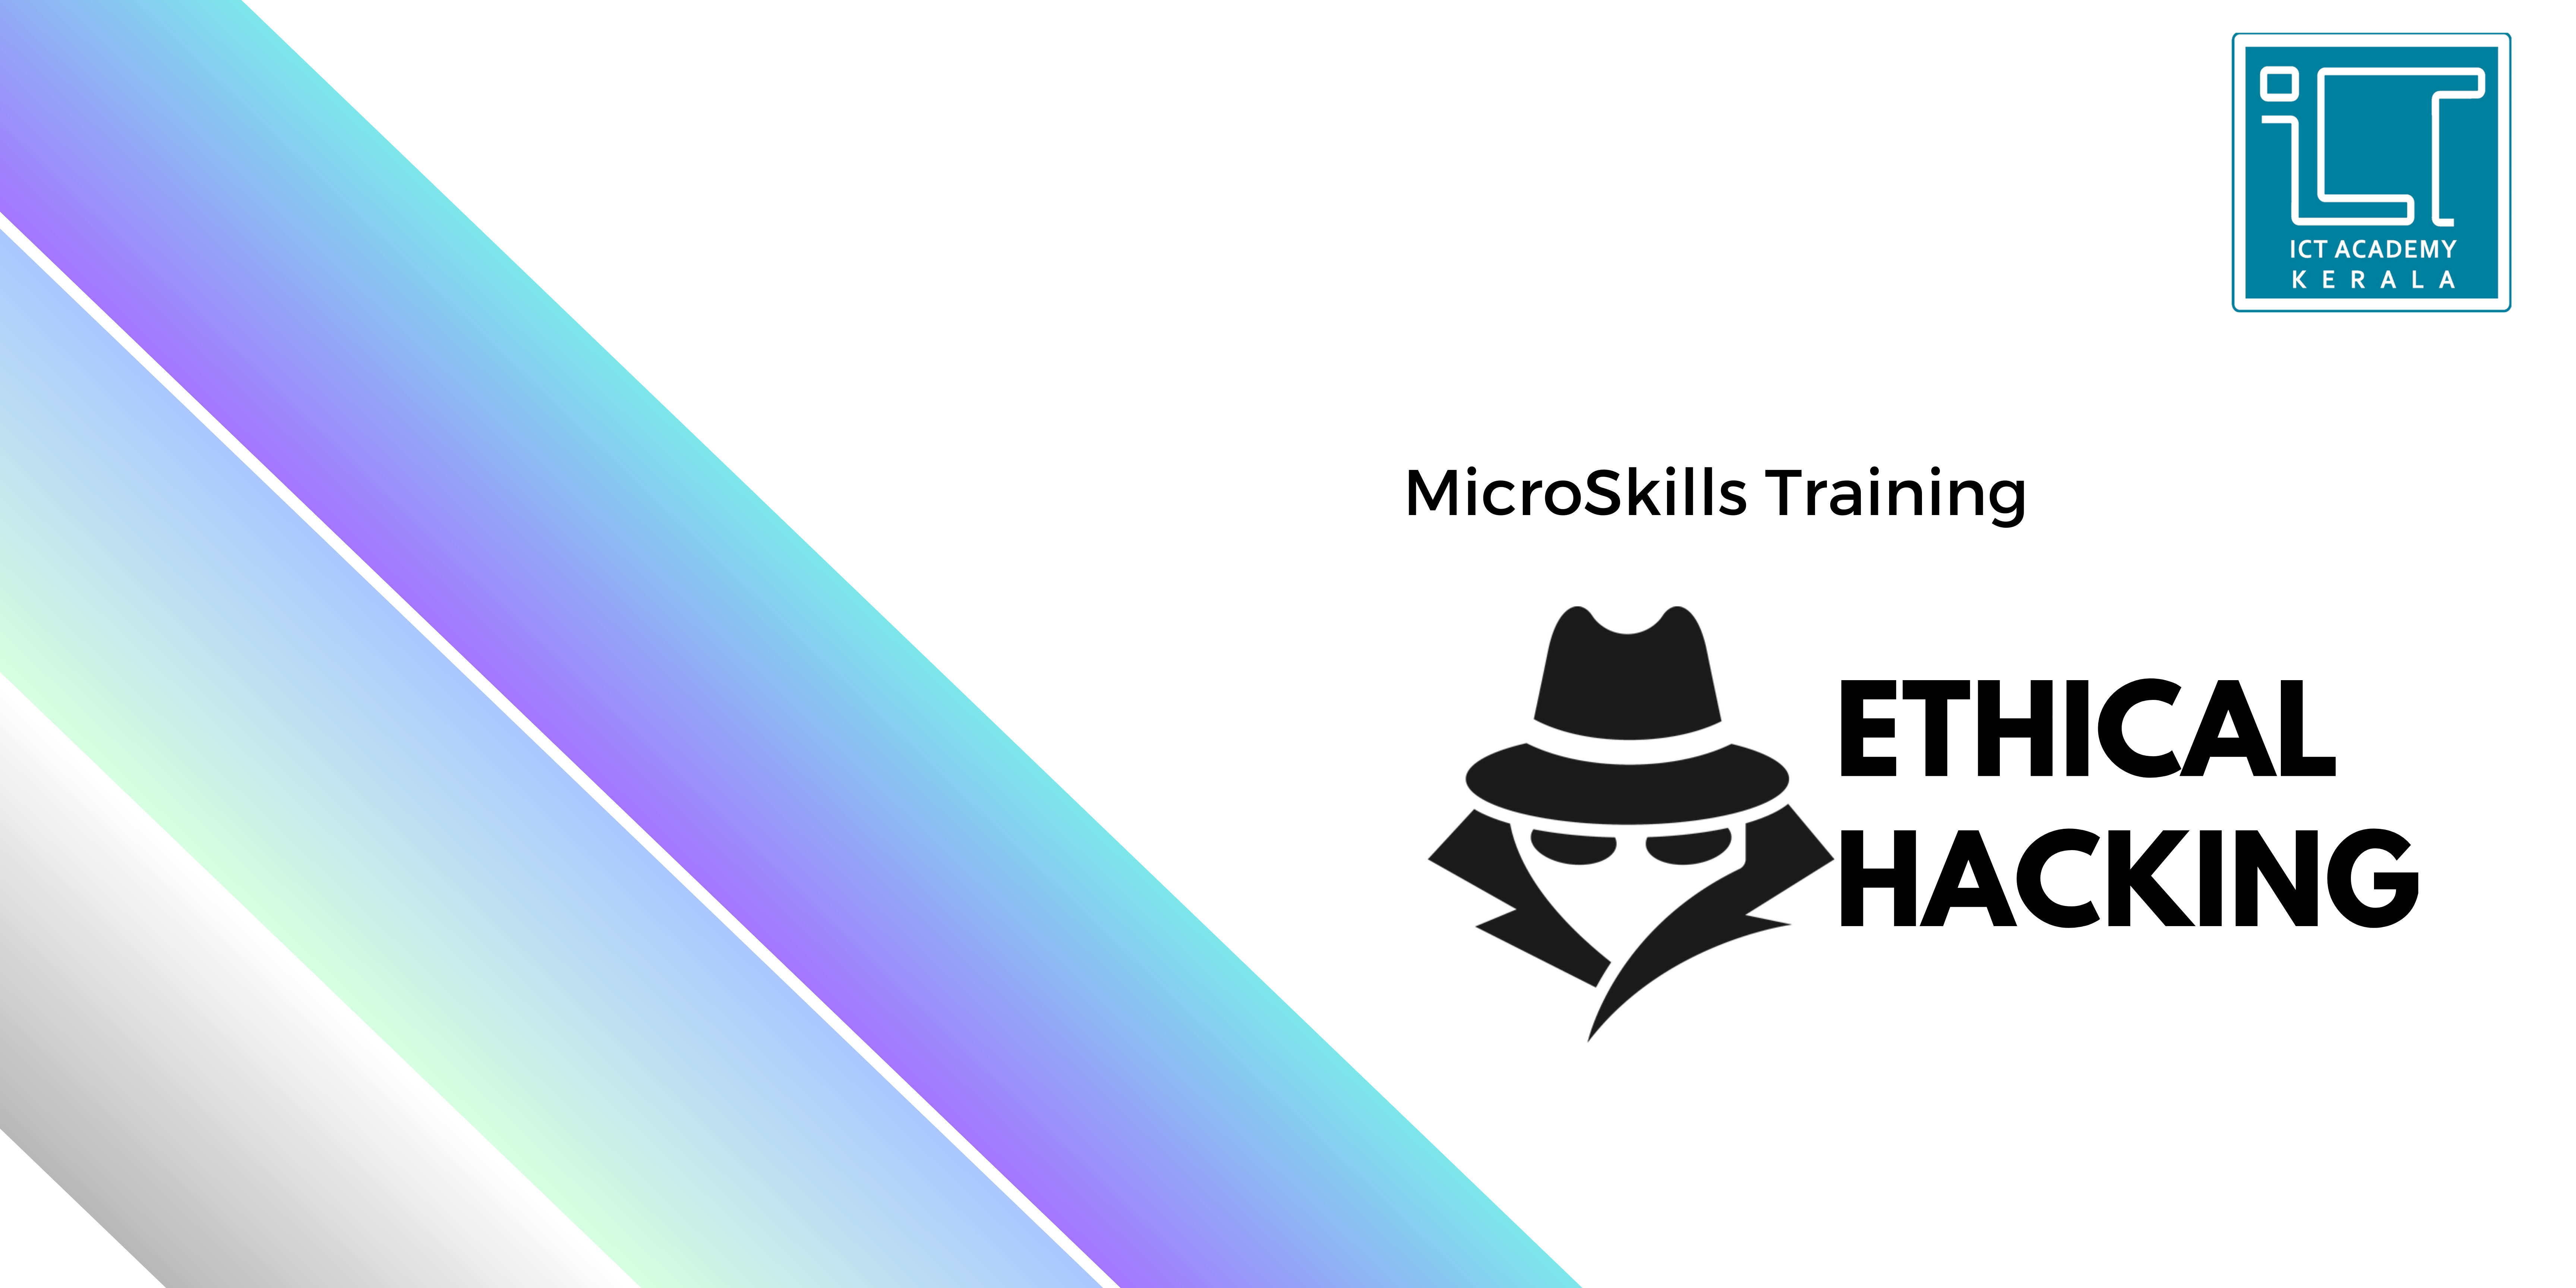 Training on Ethical Hacking